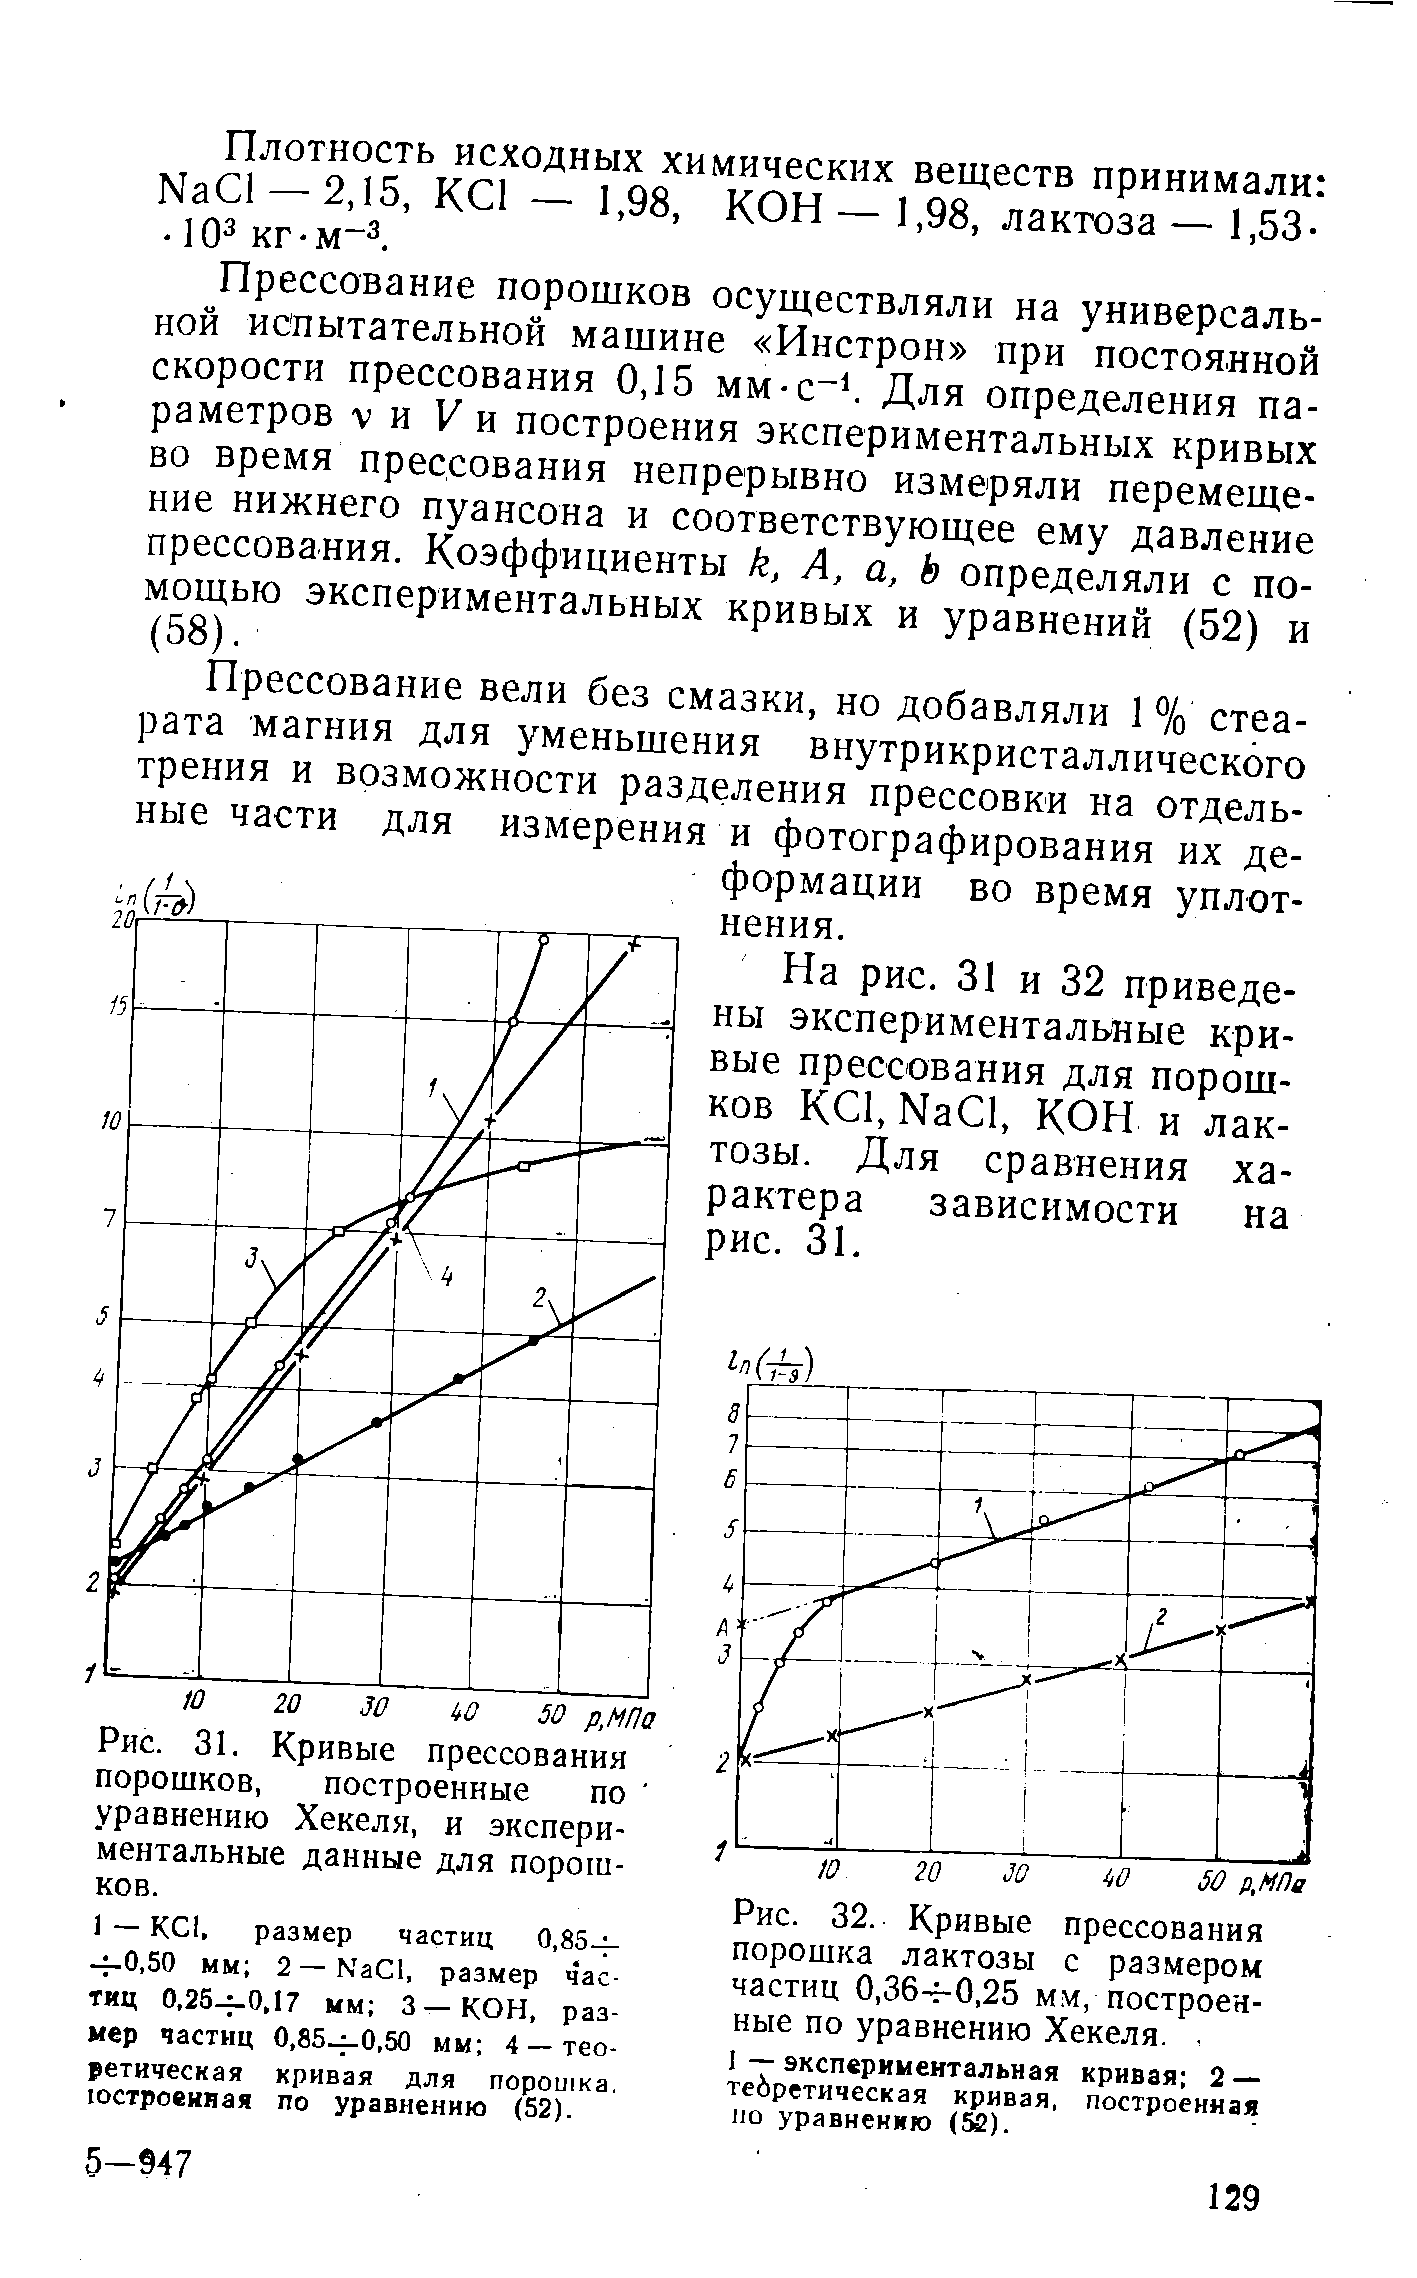 Рис. 32. Кривые прессования порошка лактозы с размером частиц 0,36- 0,25 мм, построенные по уравнению Хекеля.